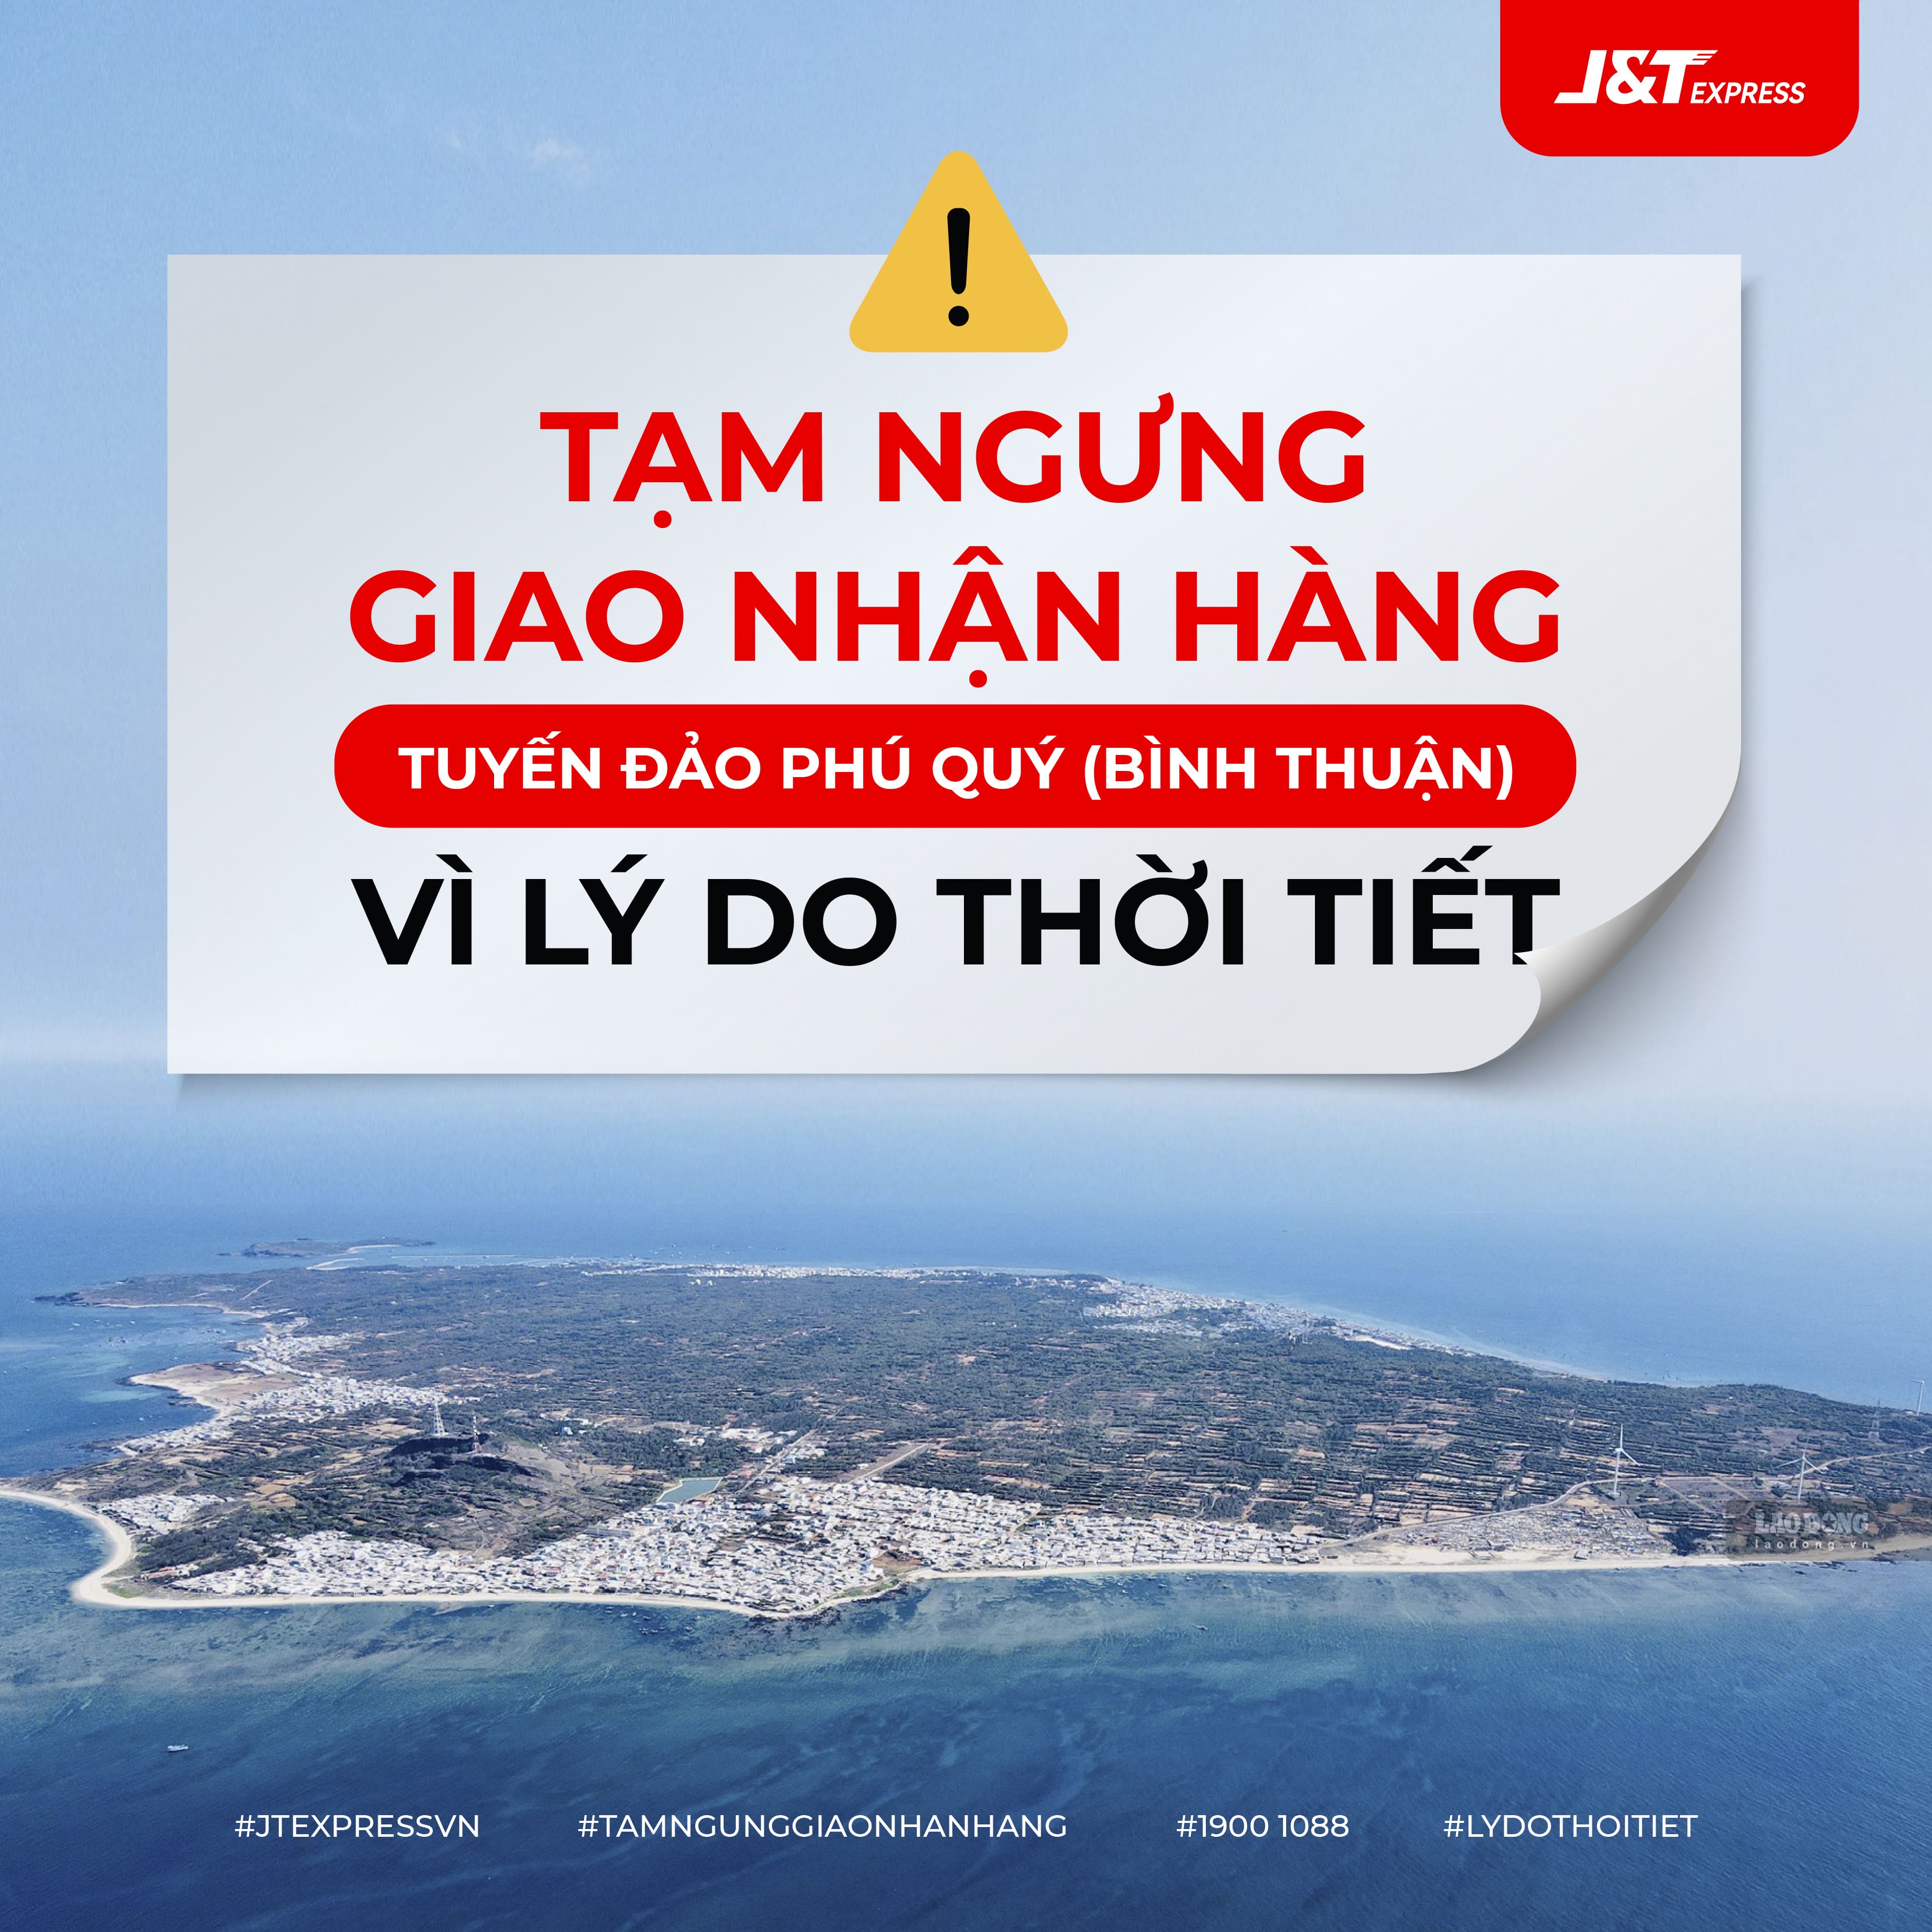 J&T Express Việt Nam - Tin tức nổi bật